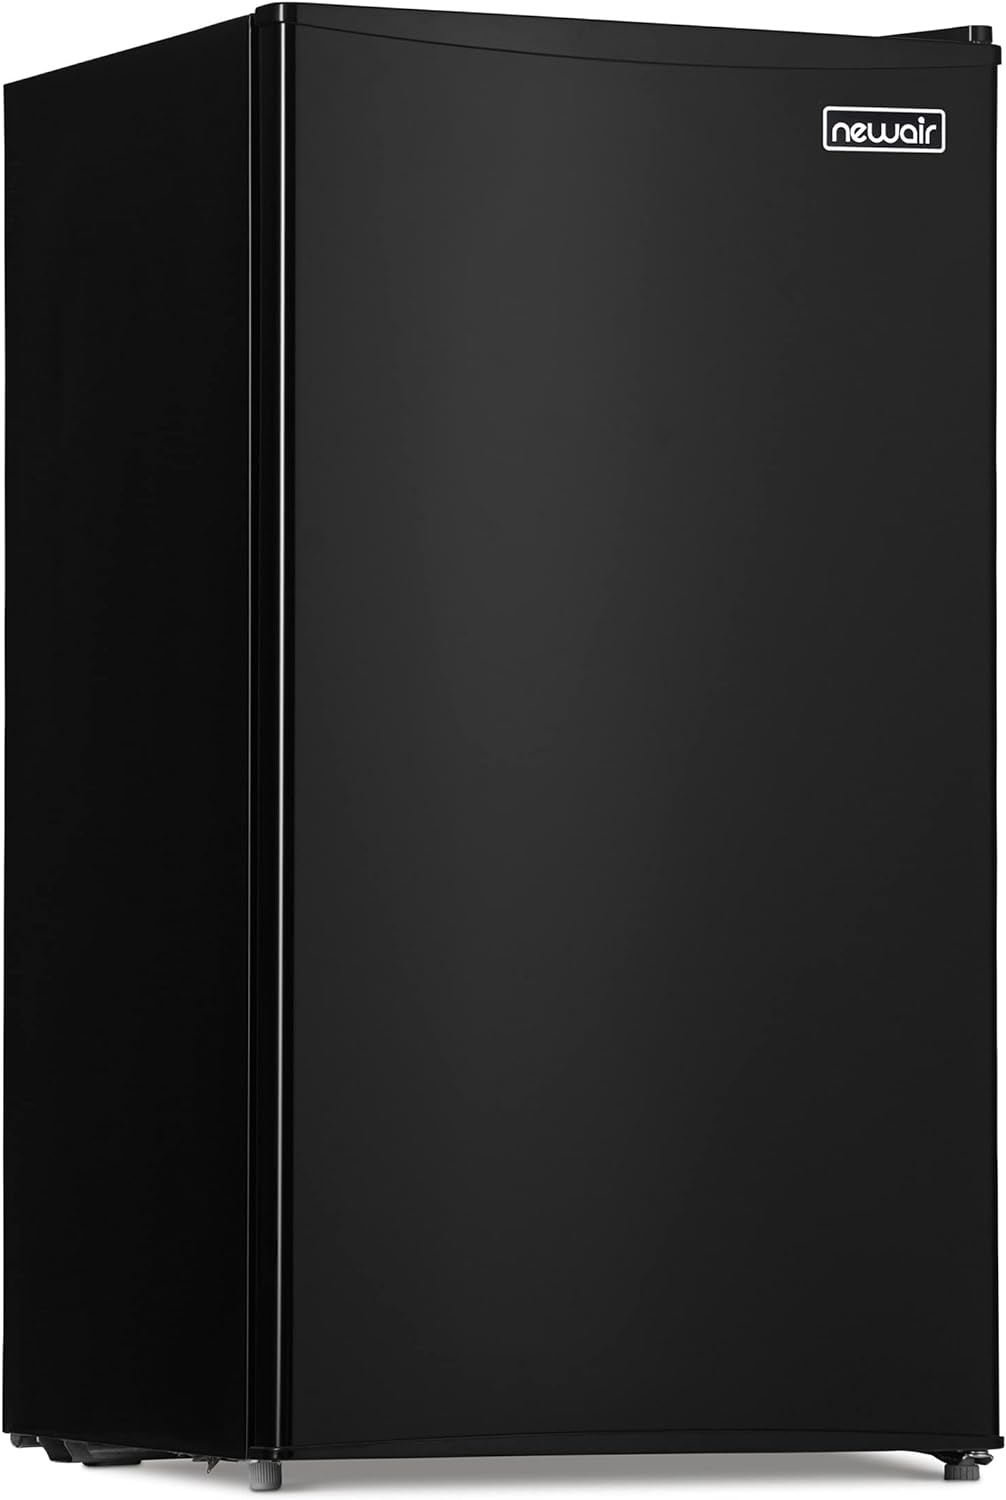 compact-mini-fridge-nrf033bk00-black-1